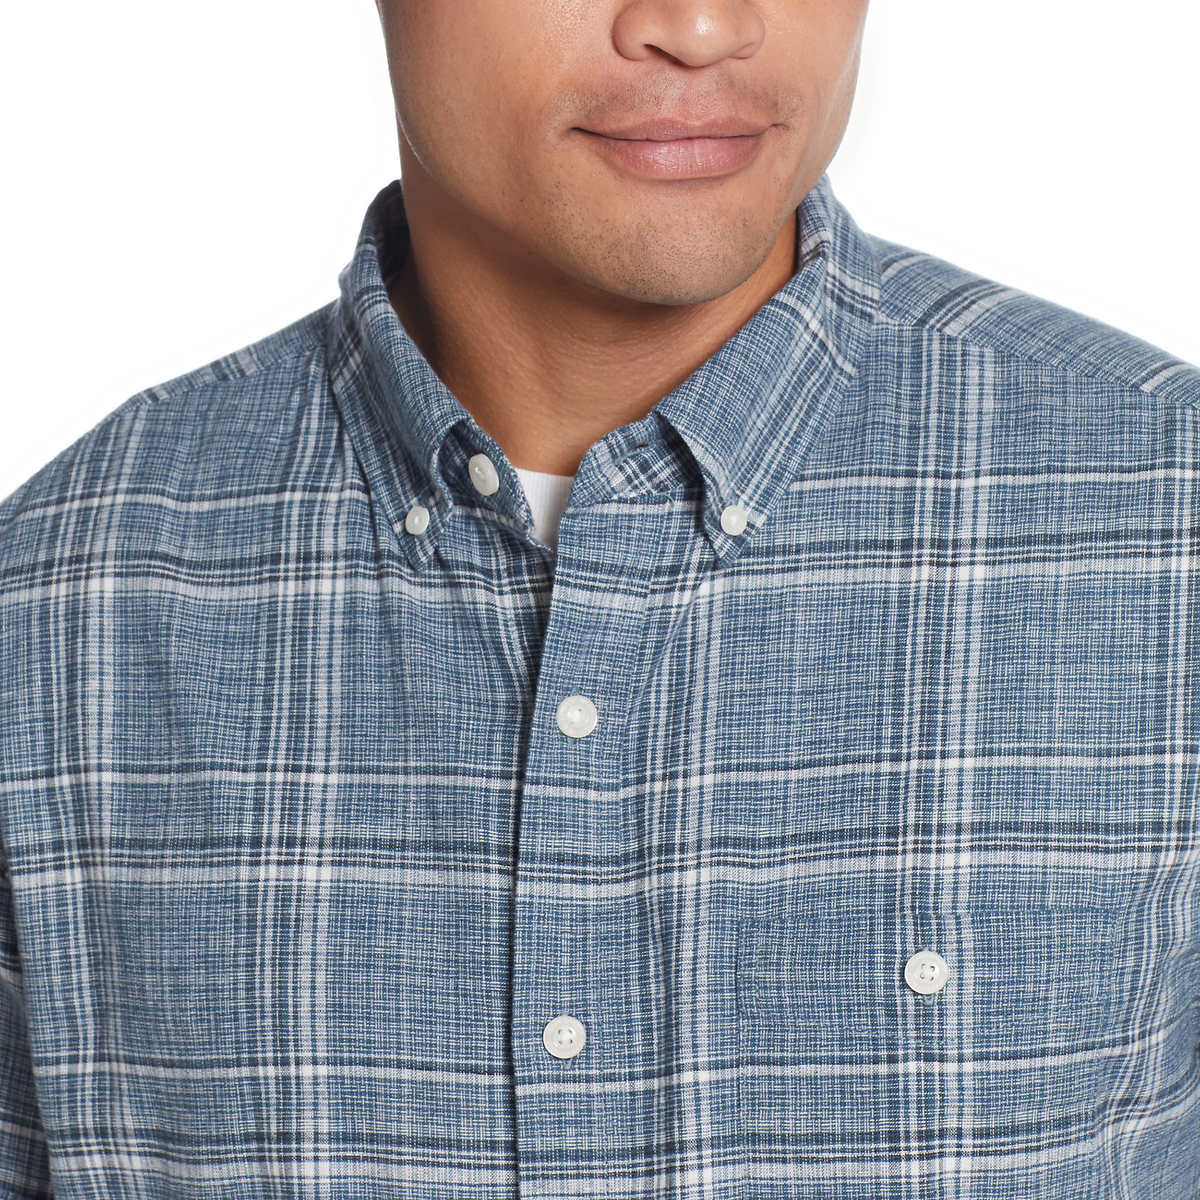 Weatherproof Vintage Men’s Short Sleeve Lightweight Linen Blend Woven Shirt